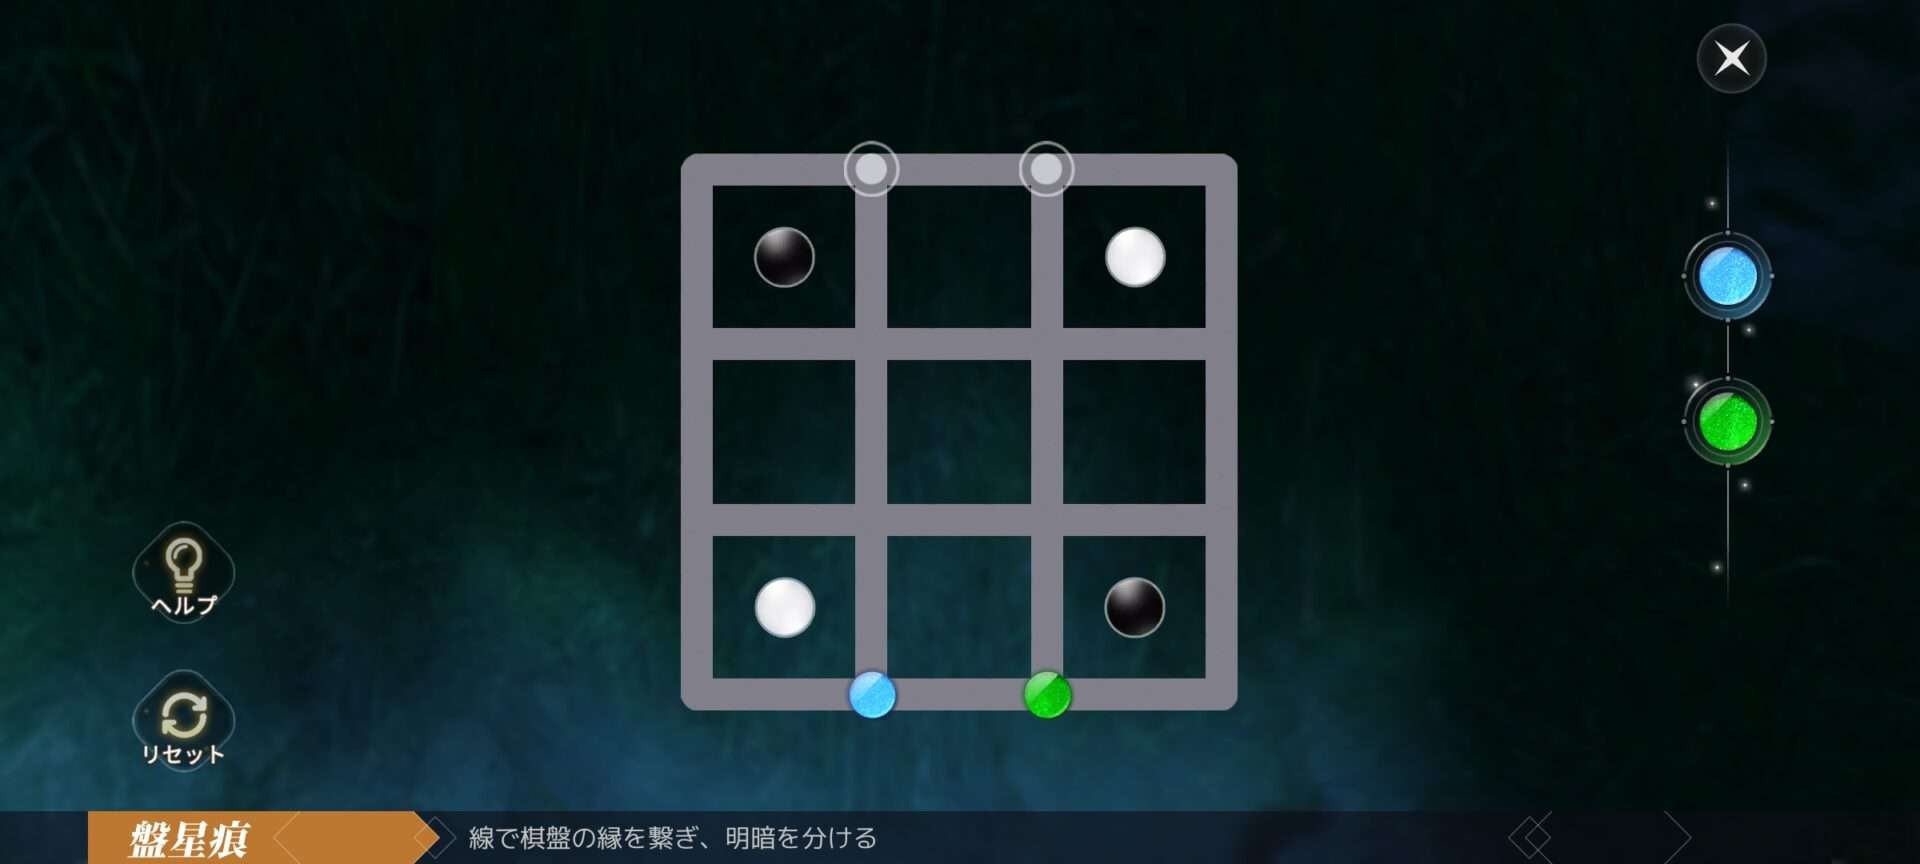 【アズレア】一筆書きのミニゲーム「盤星痕」ボード図解攻略【AZUREA-空の唄-】